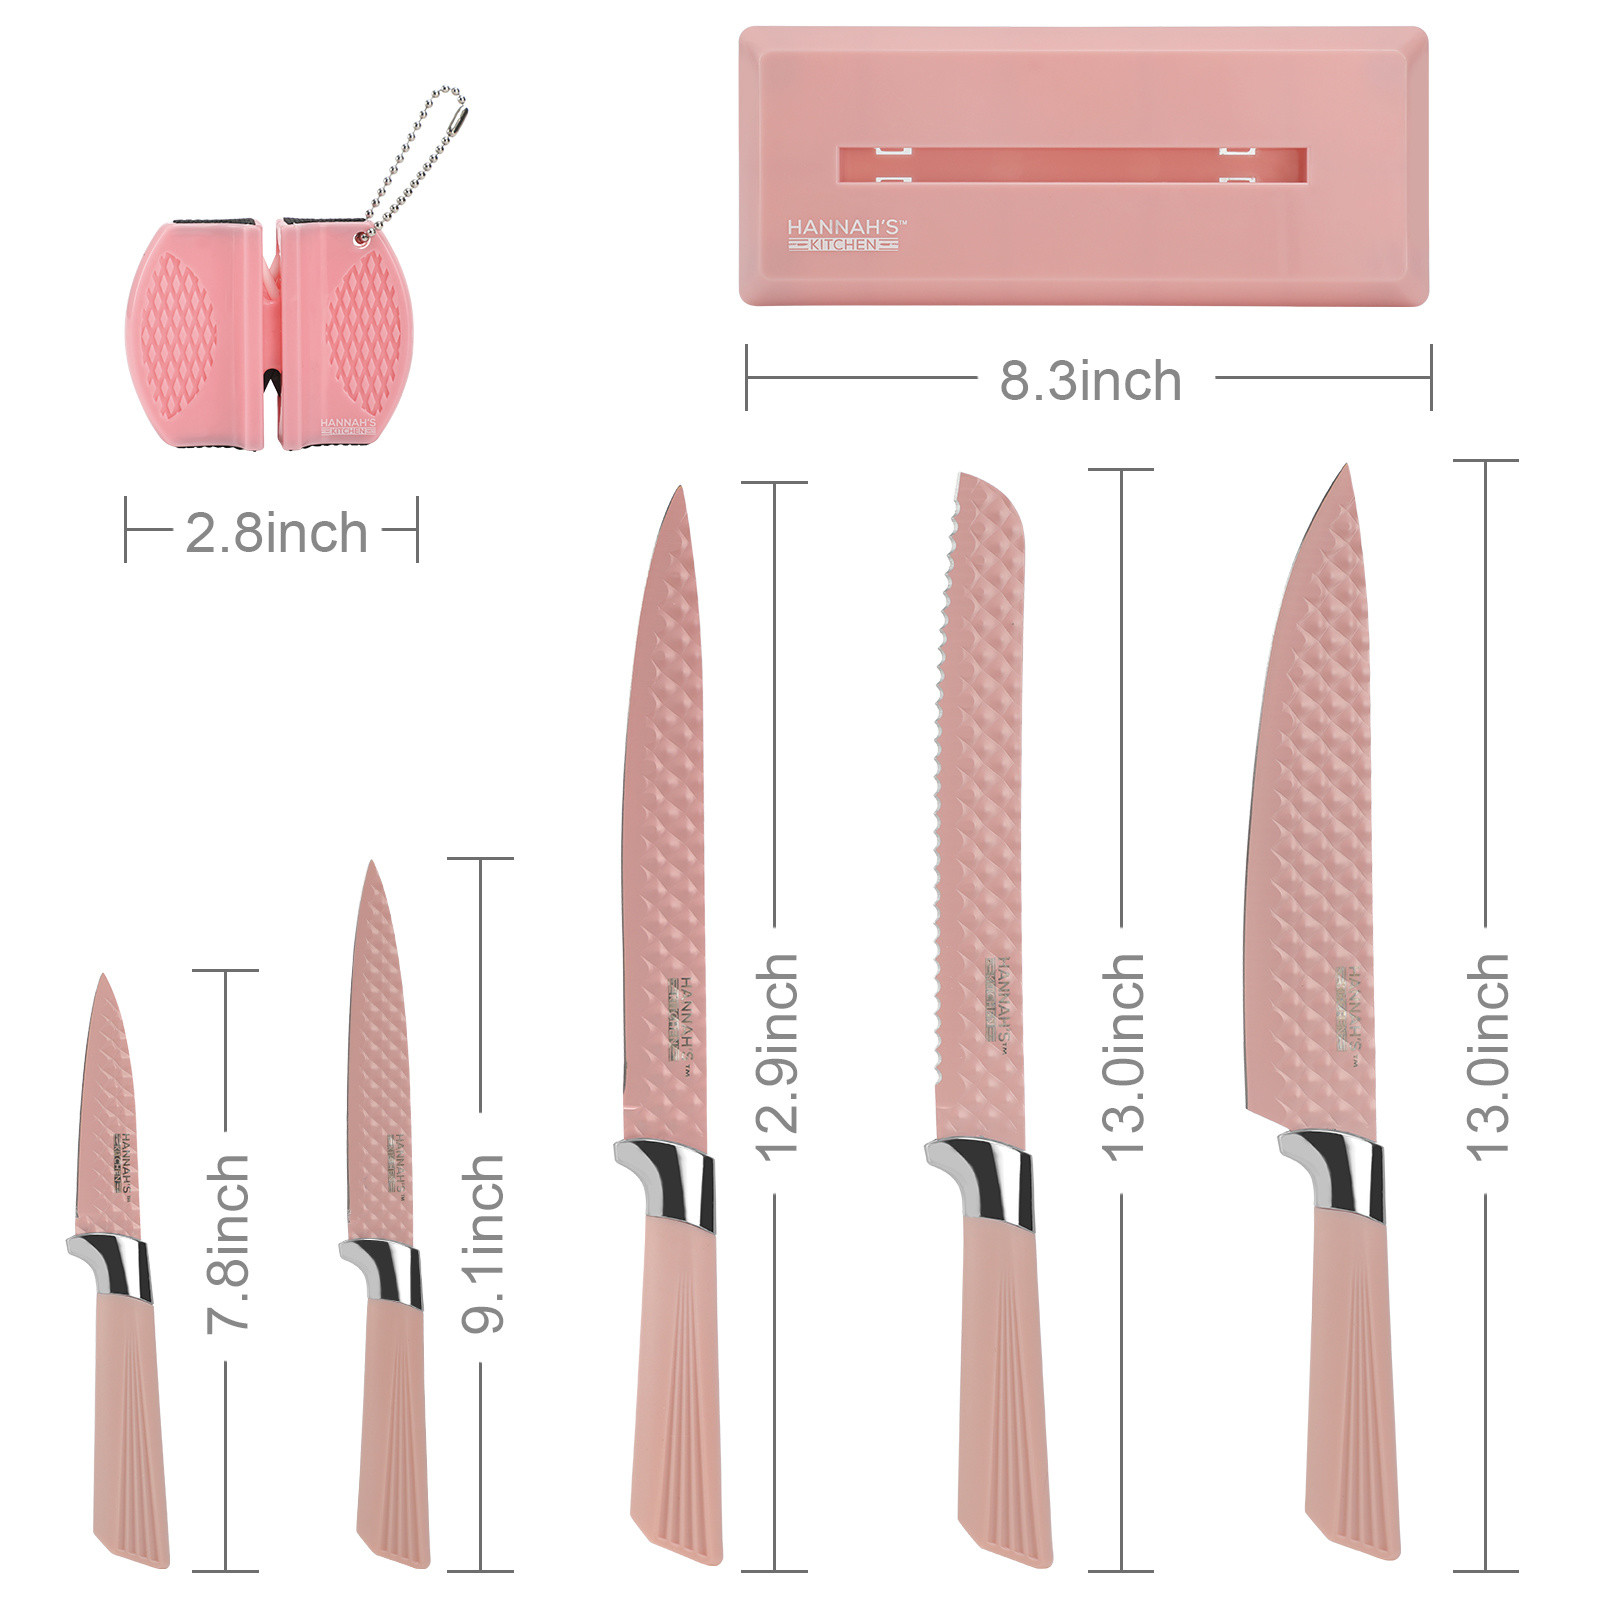 https://cdn.shoplightspeed.com/shops/618302/files/47999184/cute-pink-kitchen-knife-block-set-delivery-in-los.jpg